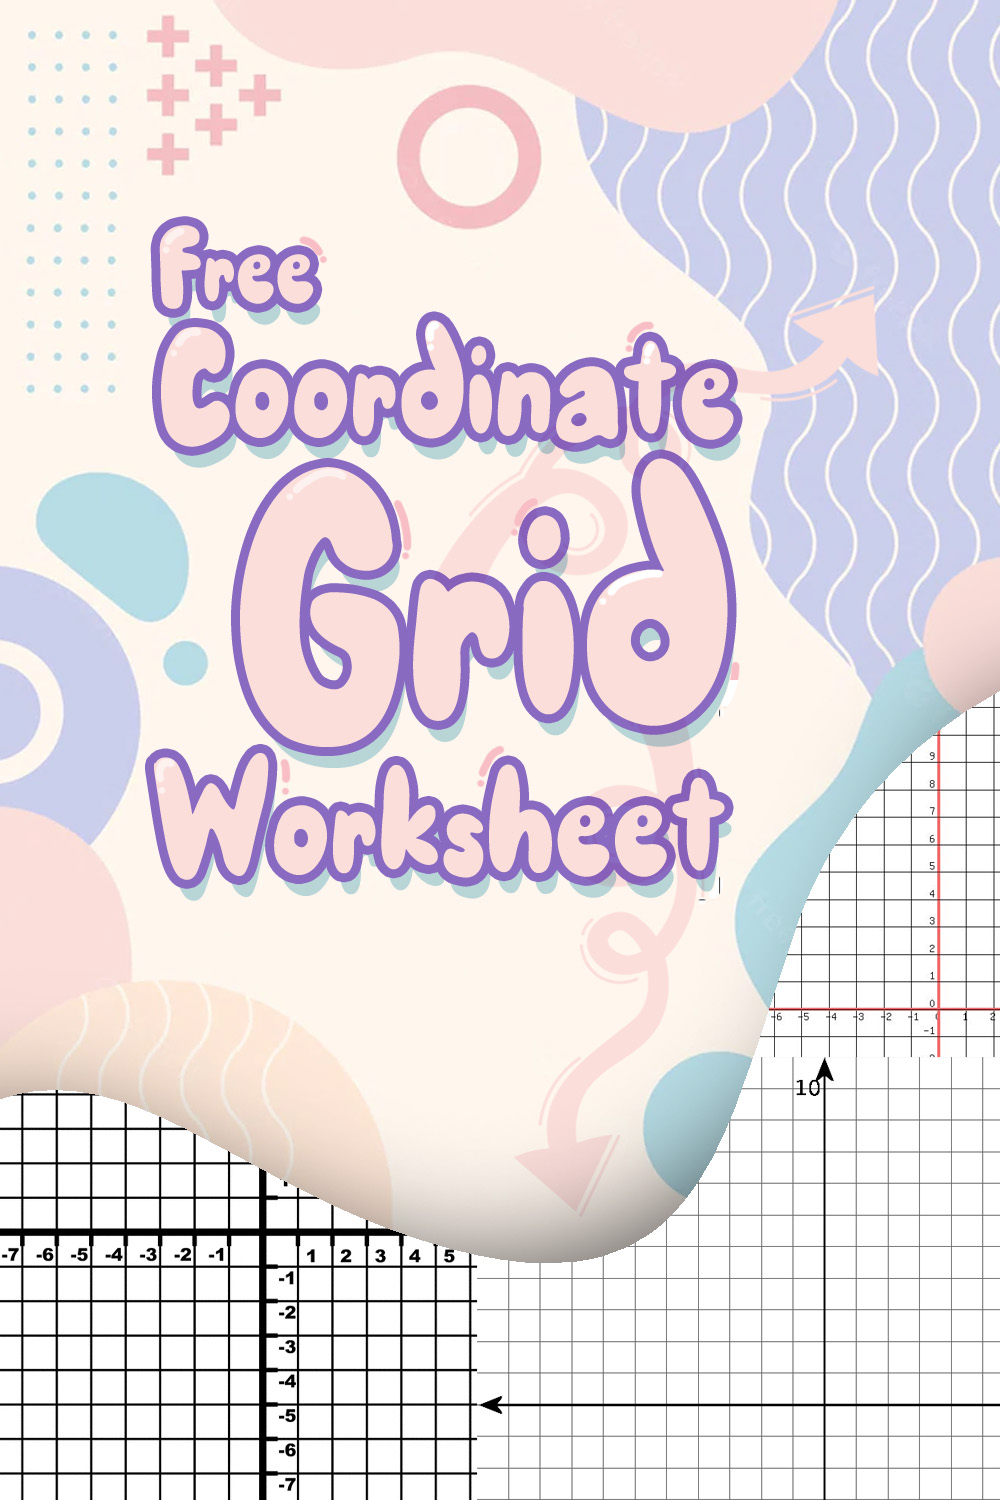 Free Coordinate Grid Worksheets